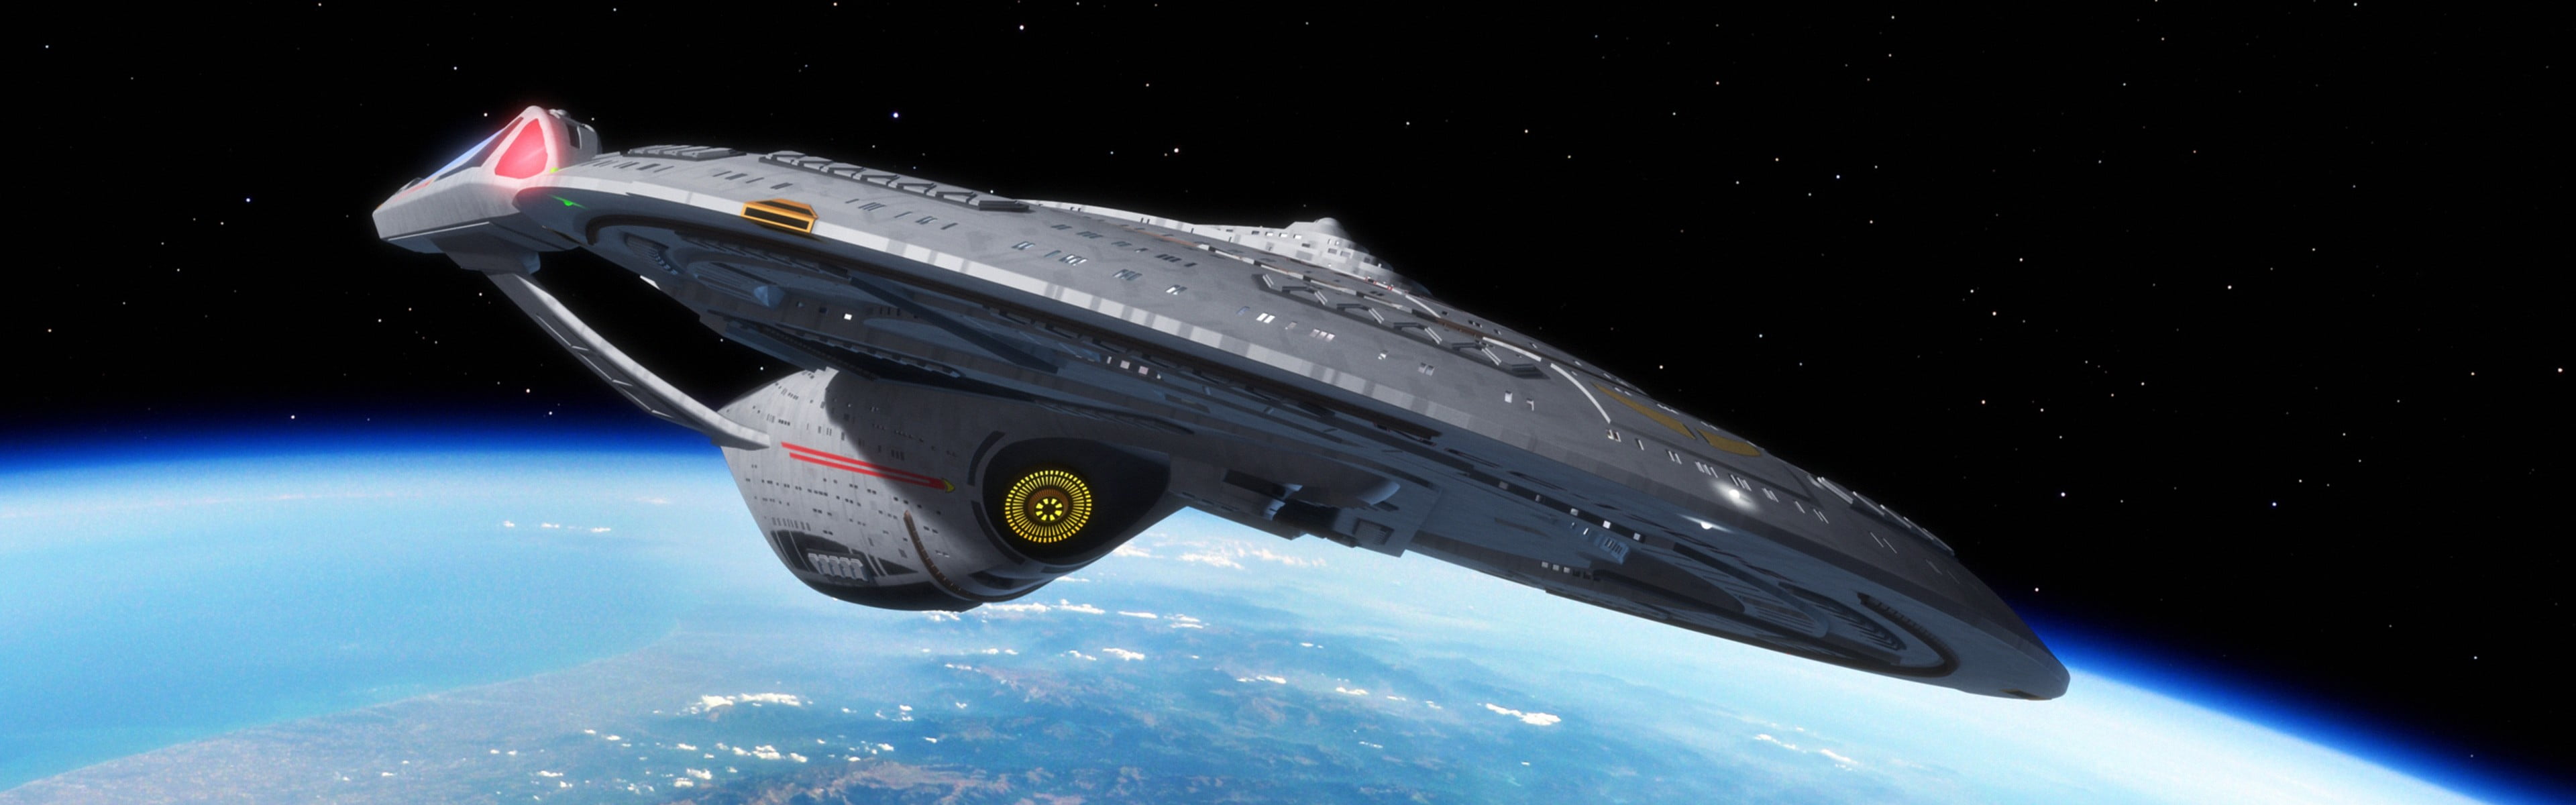 gray and black spaceship, Star Trek, USS Enterprise (spaceship), space, multiple display